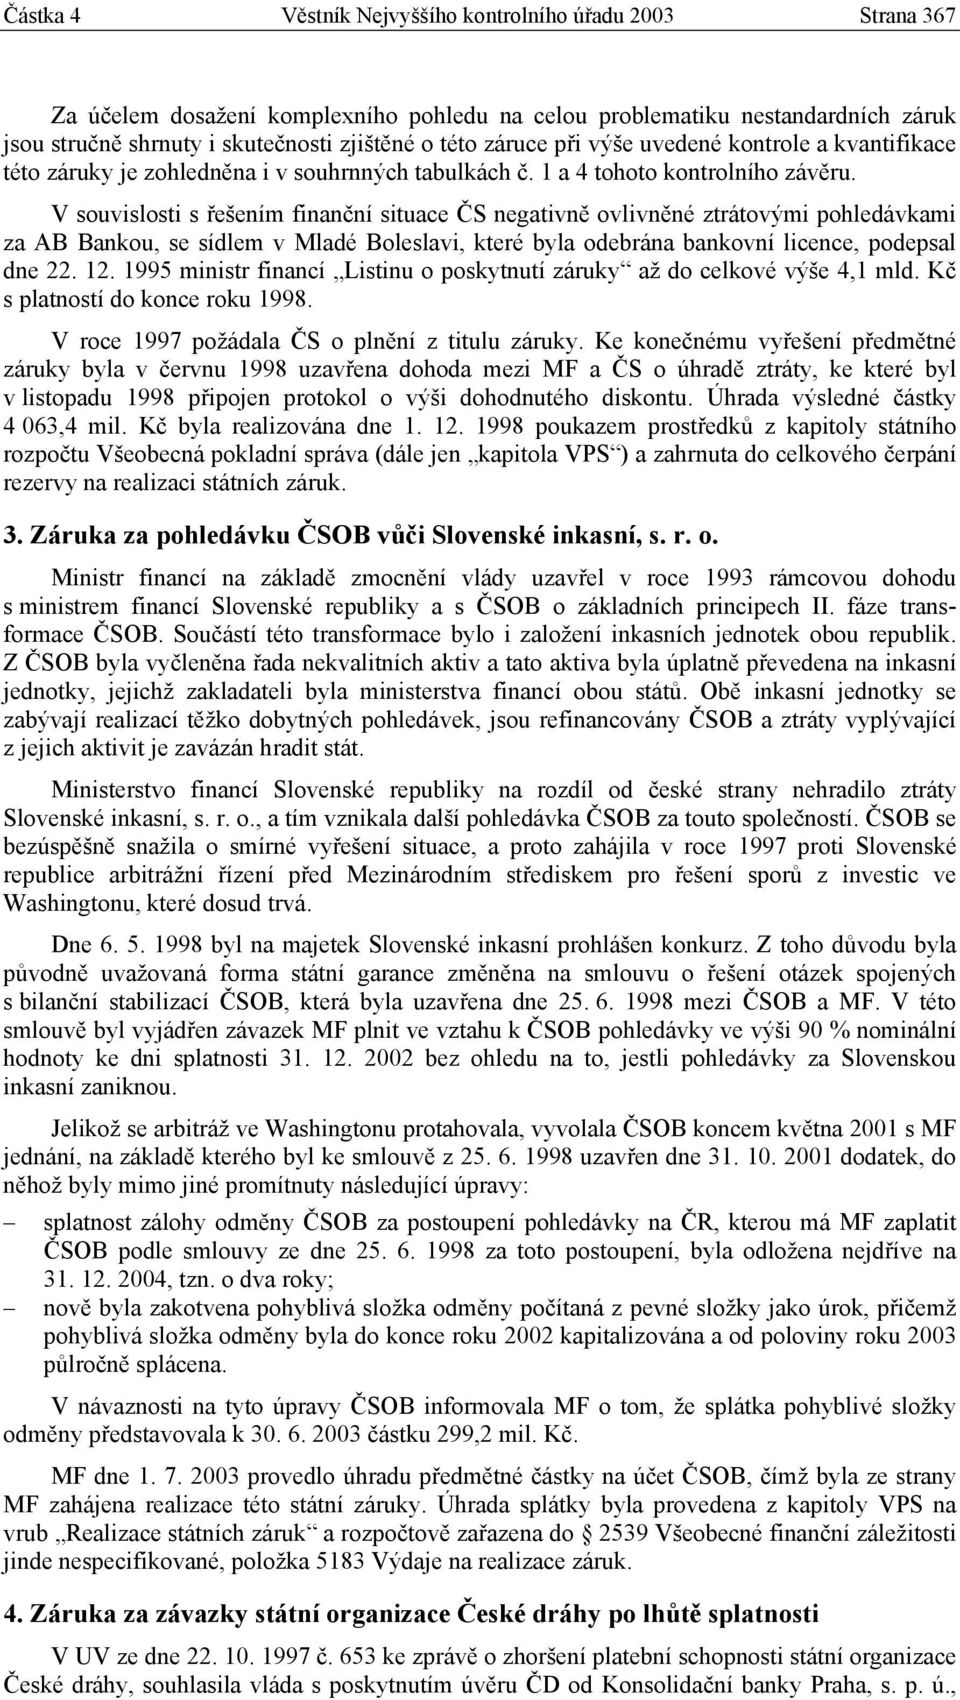 V souvislosti s řešením finanční situace ČS negativně ovlivněné ztrátovými pohledávkami za AB Bankou, se sídlem v Mladé Boleslavi, které byla odebrána bankovní licence, podepsal dne 22. 12.